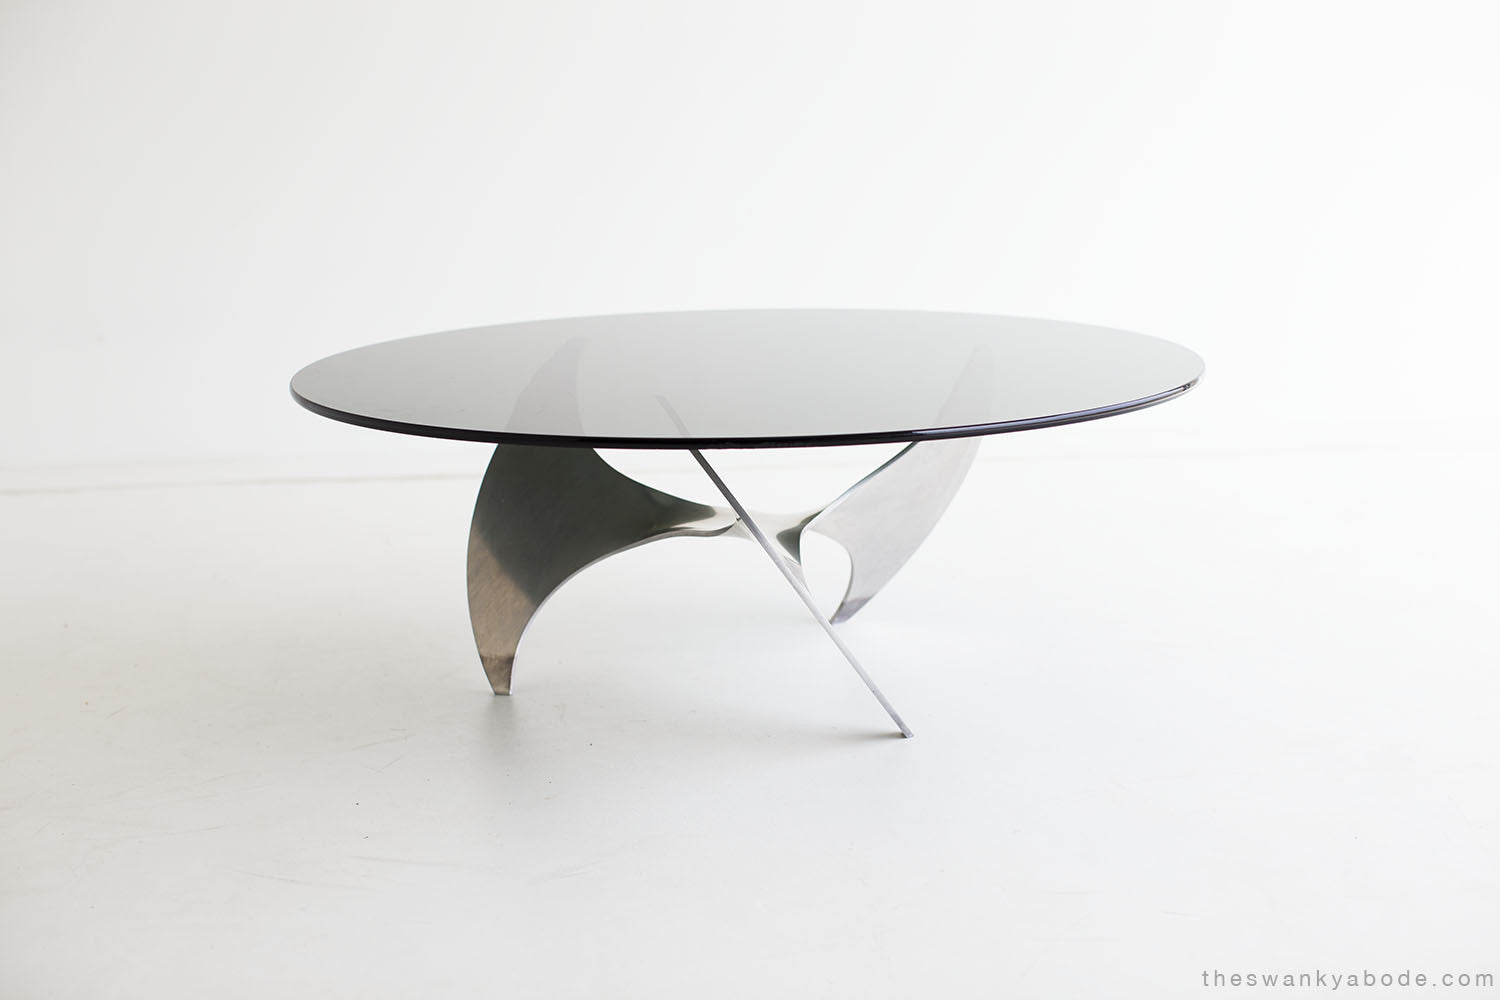 Knut Hesterberg Propeller Coffee Table for Ronald Schmitt - 01141603